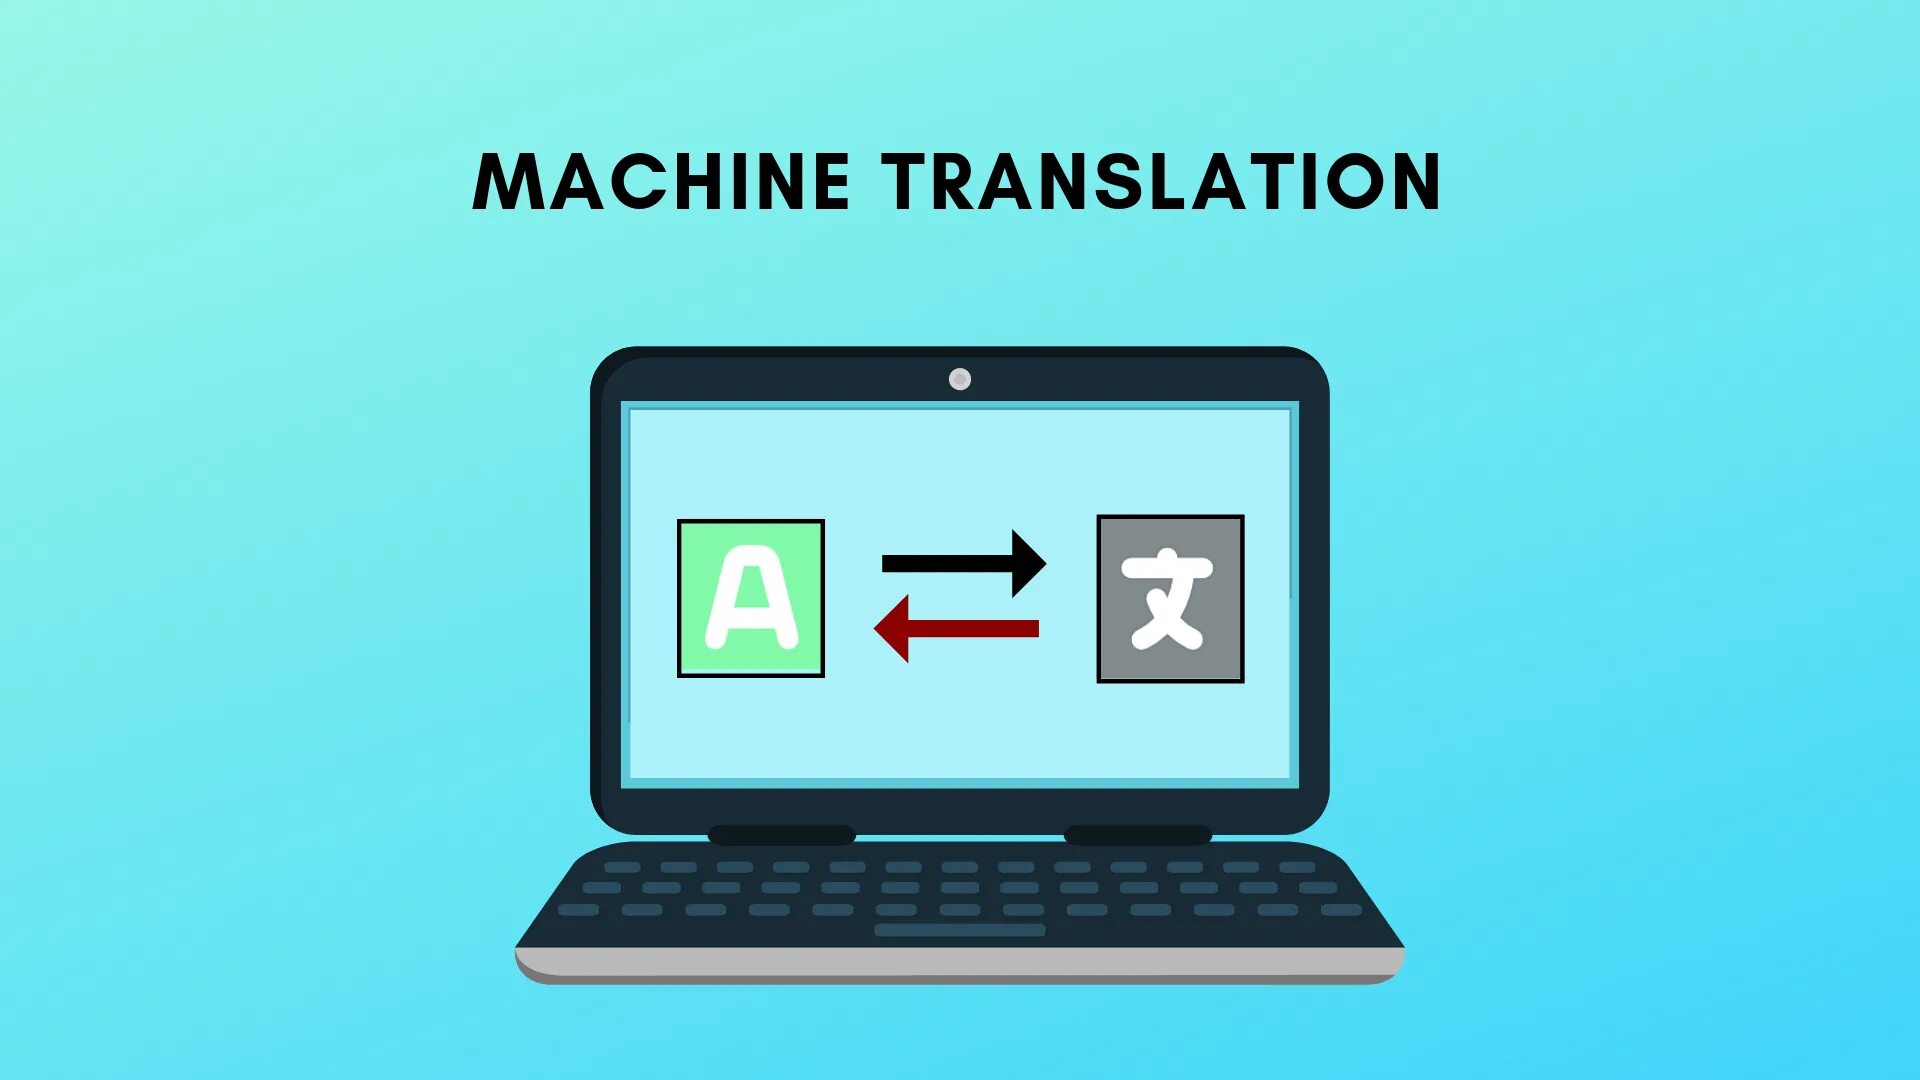 Image automatic. Машинный перевод. Machine translation. Системы машинного перевода. Компьютерные методы перевода.